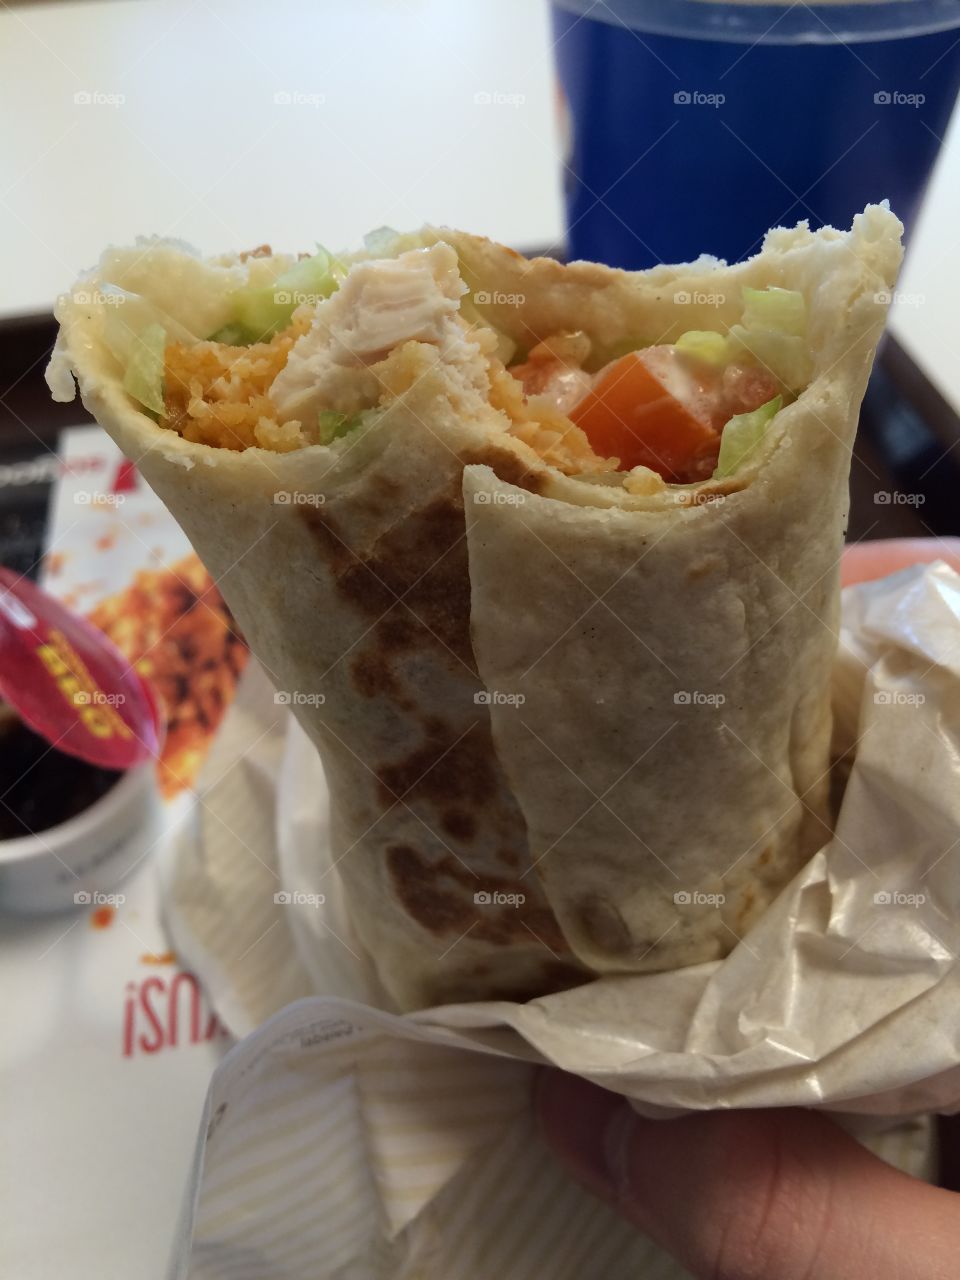 Burrito tacos